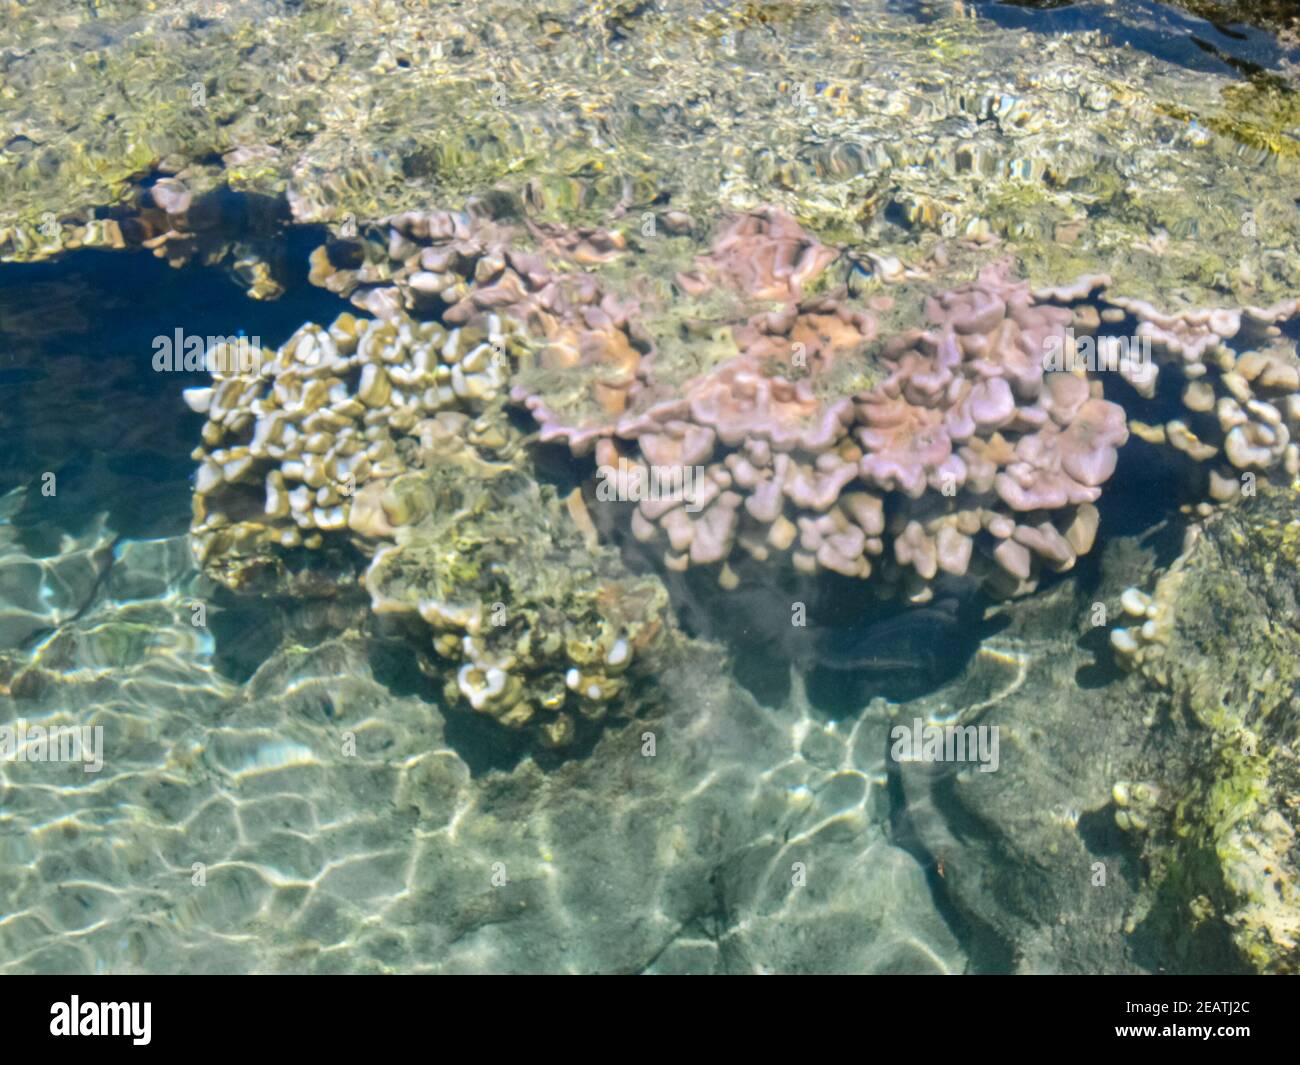 Meereskorallen in der Nähe von Ufer in seichtem Wasser. Osterinsel. Stockfoto